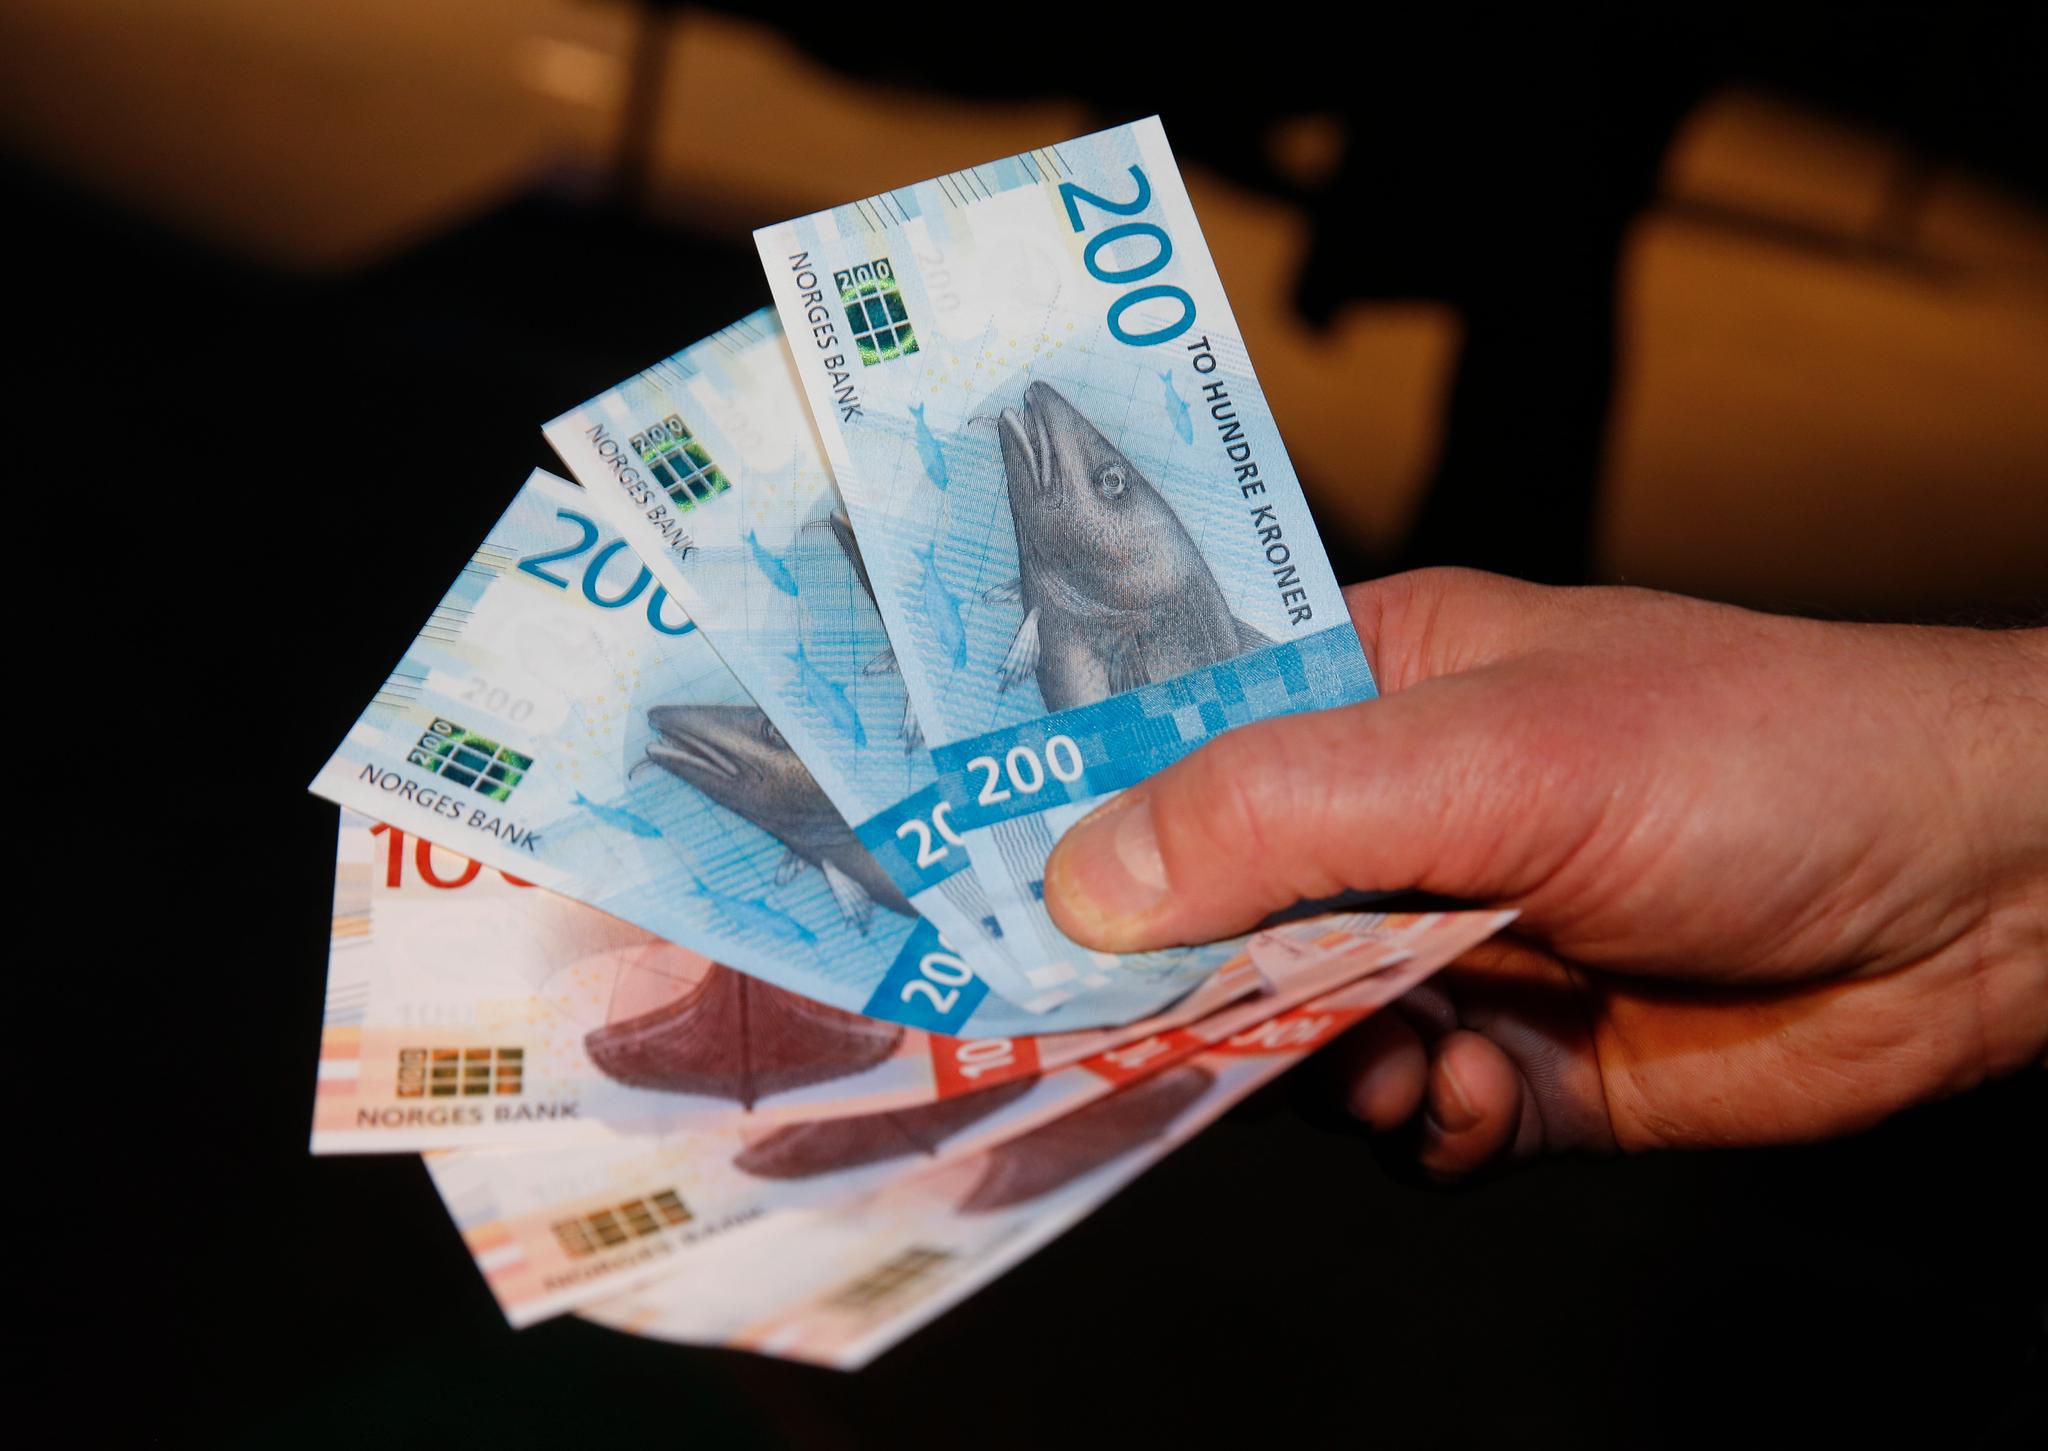 IKKE LOV: Visste du at private tippekonkurranser på jobben eller i vennegjengen er forbudt etter norsk lov, så lenge det er penger involvert?